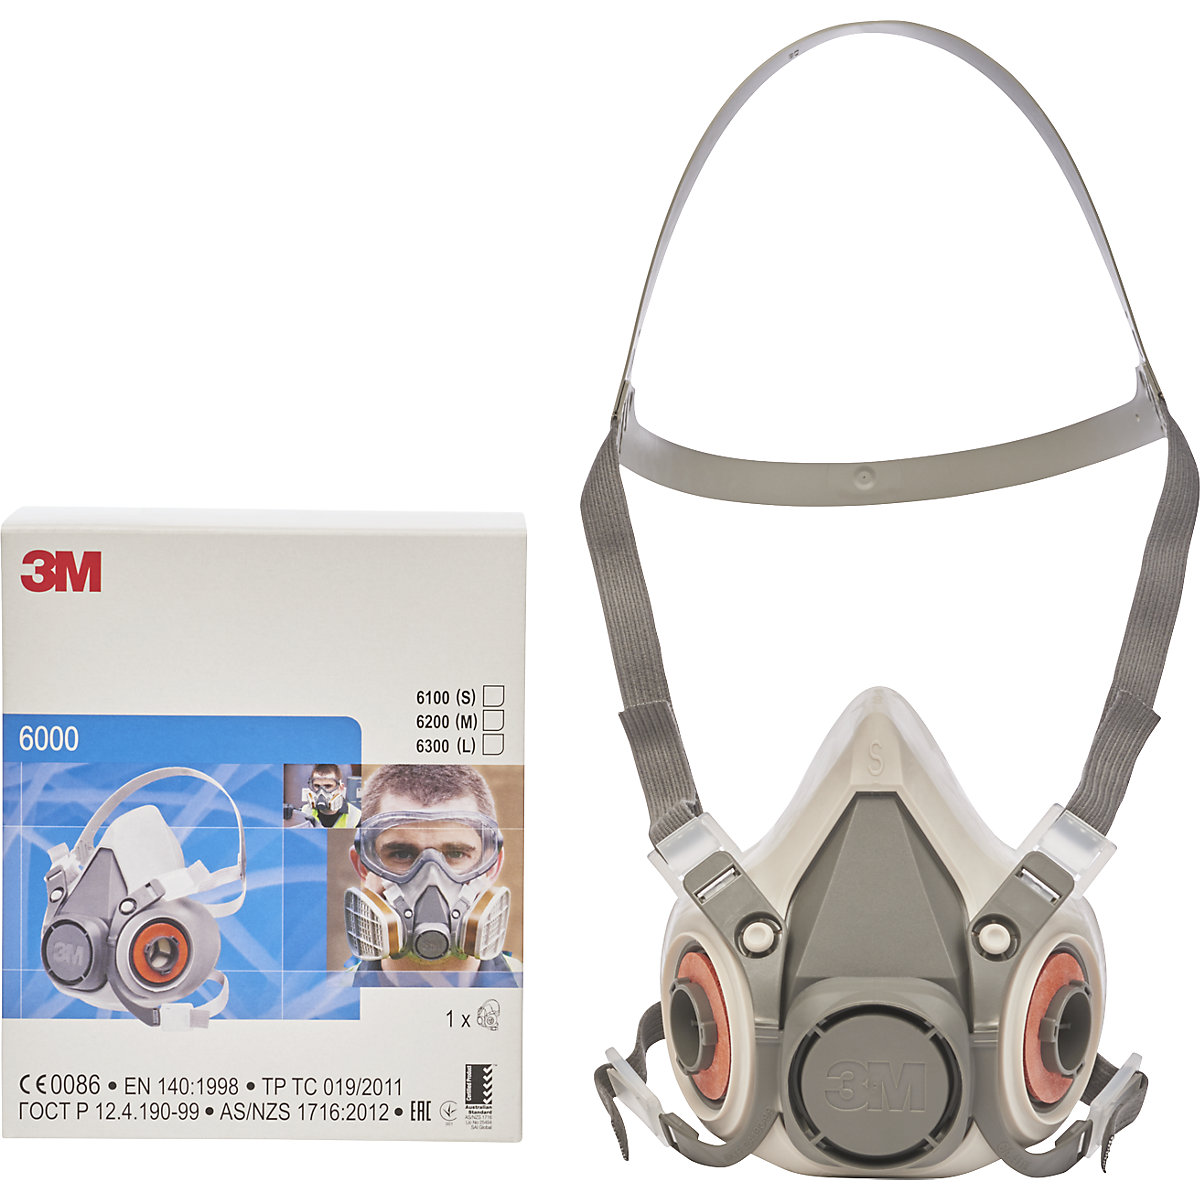 Demi-masque de protection respiratoire de la série 6000 de 3M. Large.